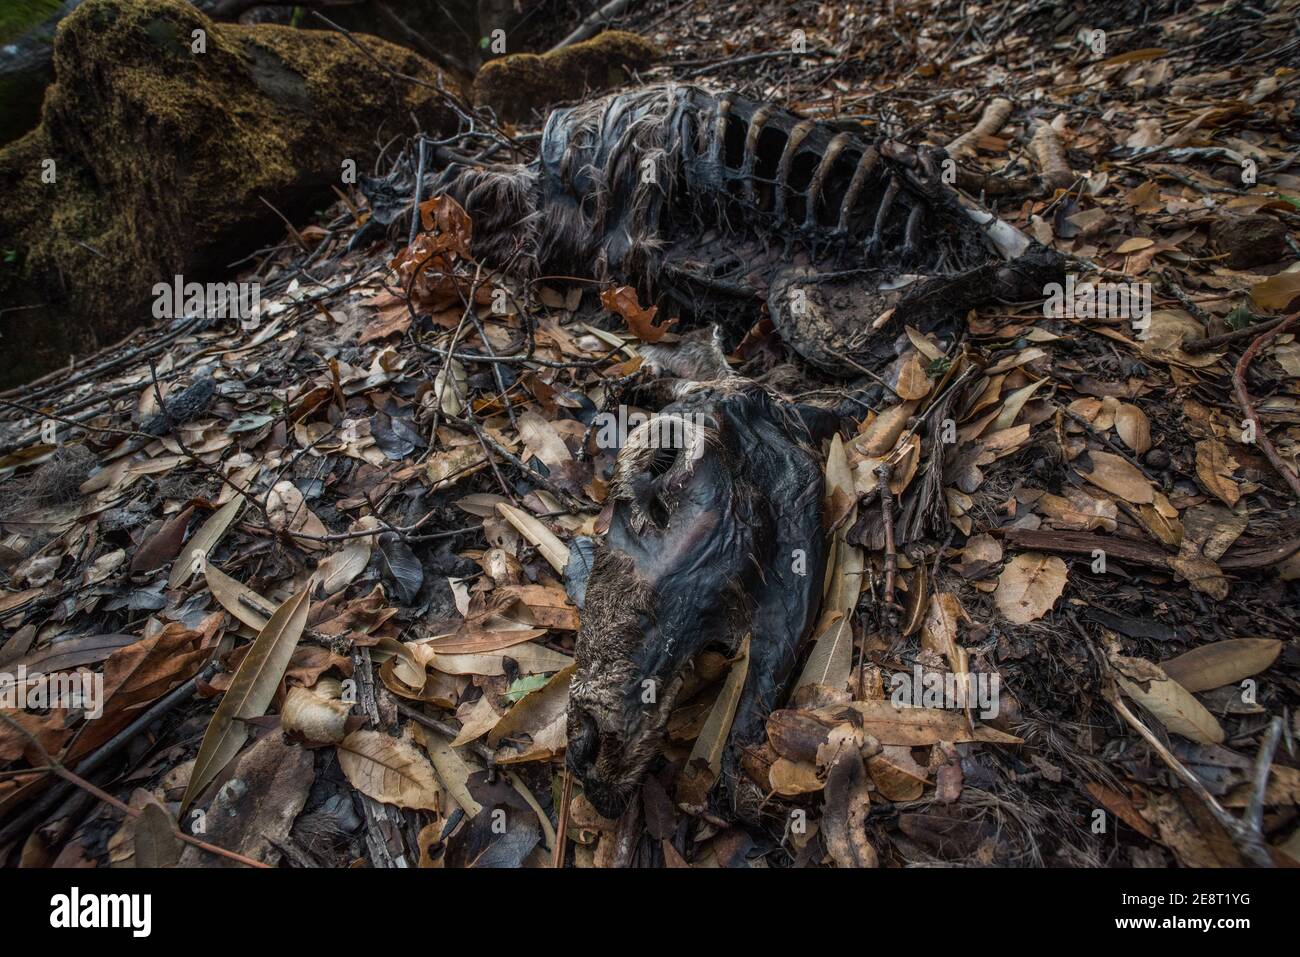 Le cerf mulet mort (Odocoileus hemionus californicus) se décompose sur le sol forestier en Californie, peut-être victime de feux de forêt qui ont ravagé la région. Banque D'Images